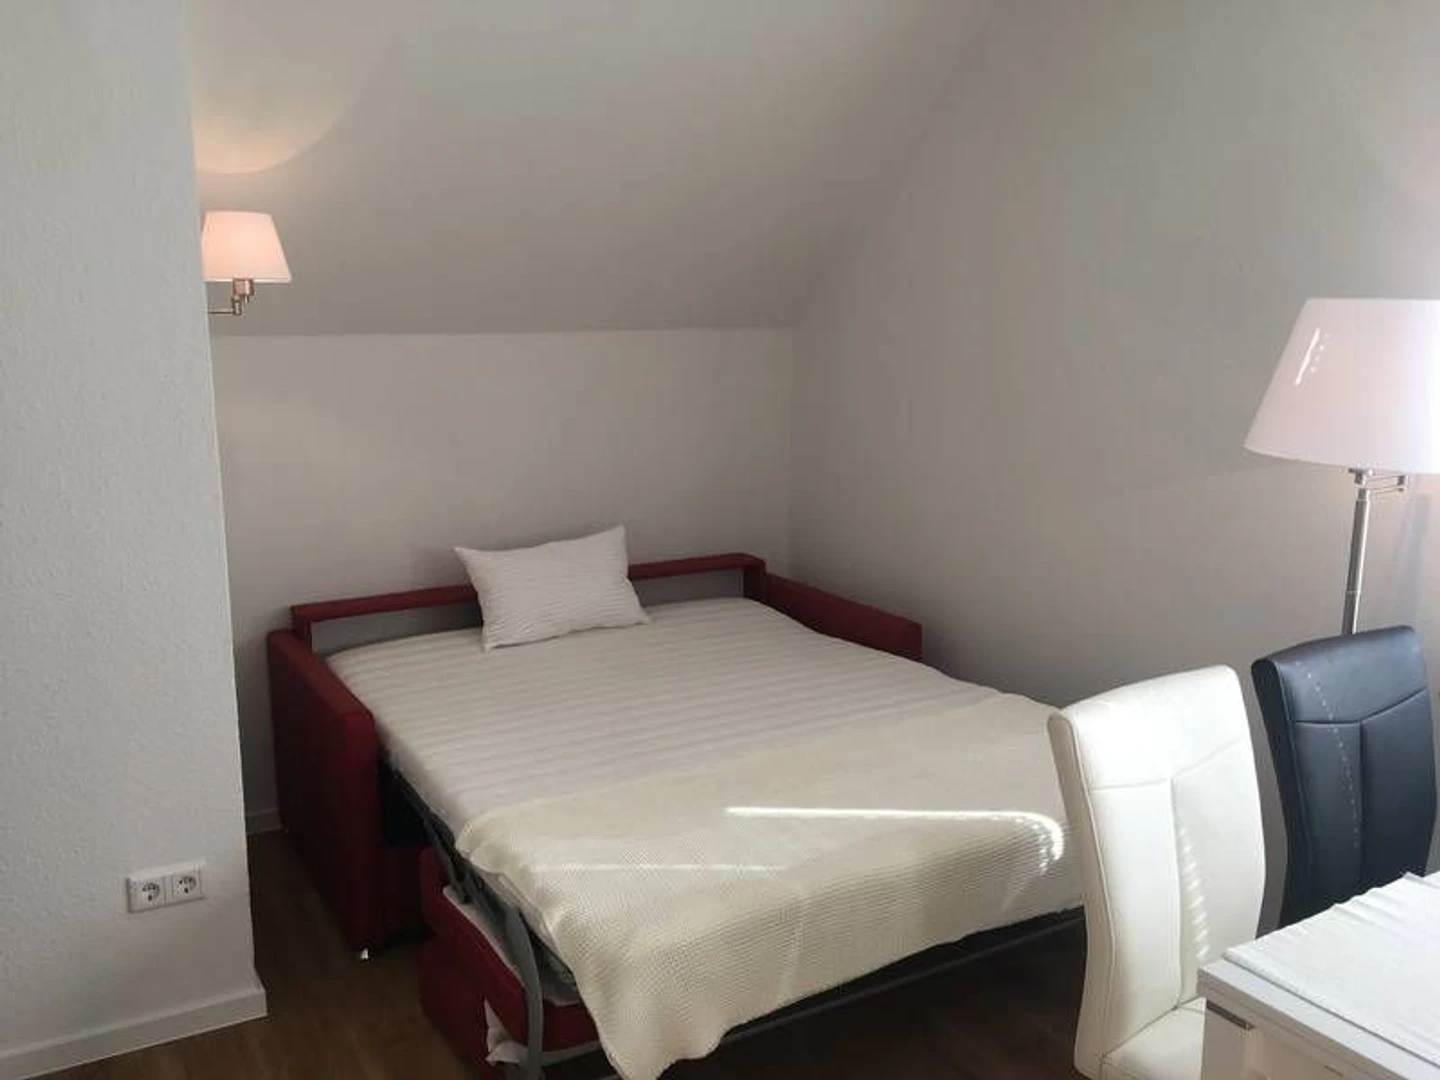 Quarto para alugar com cama de casal em Bielefeld